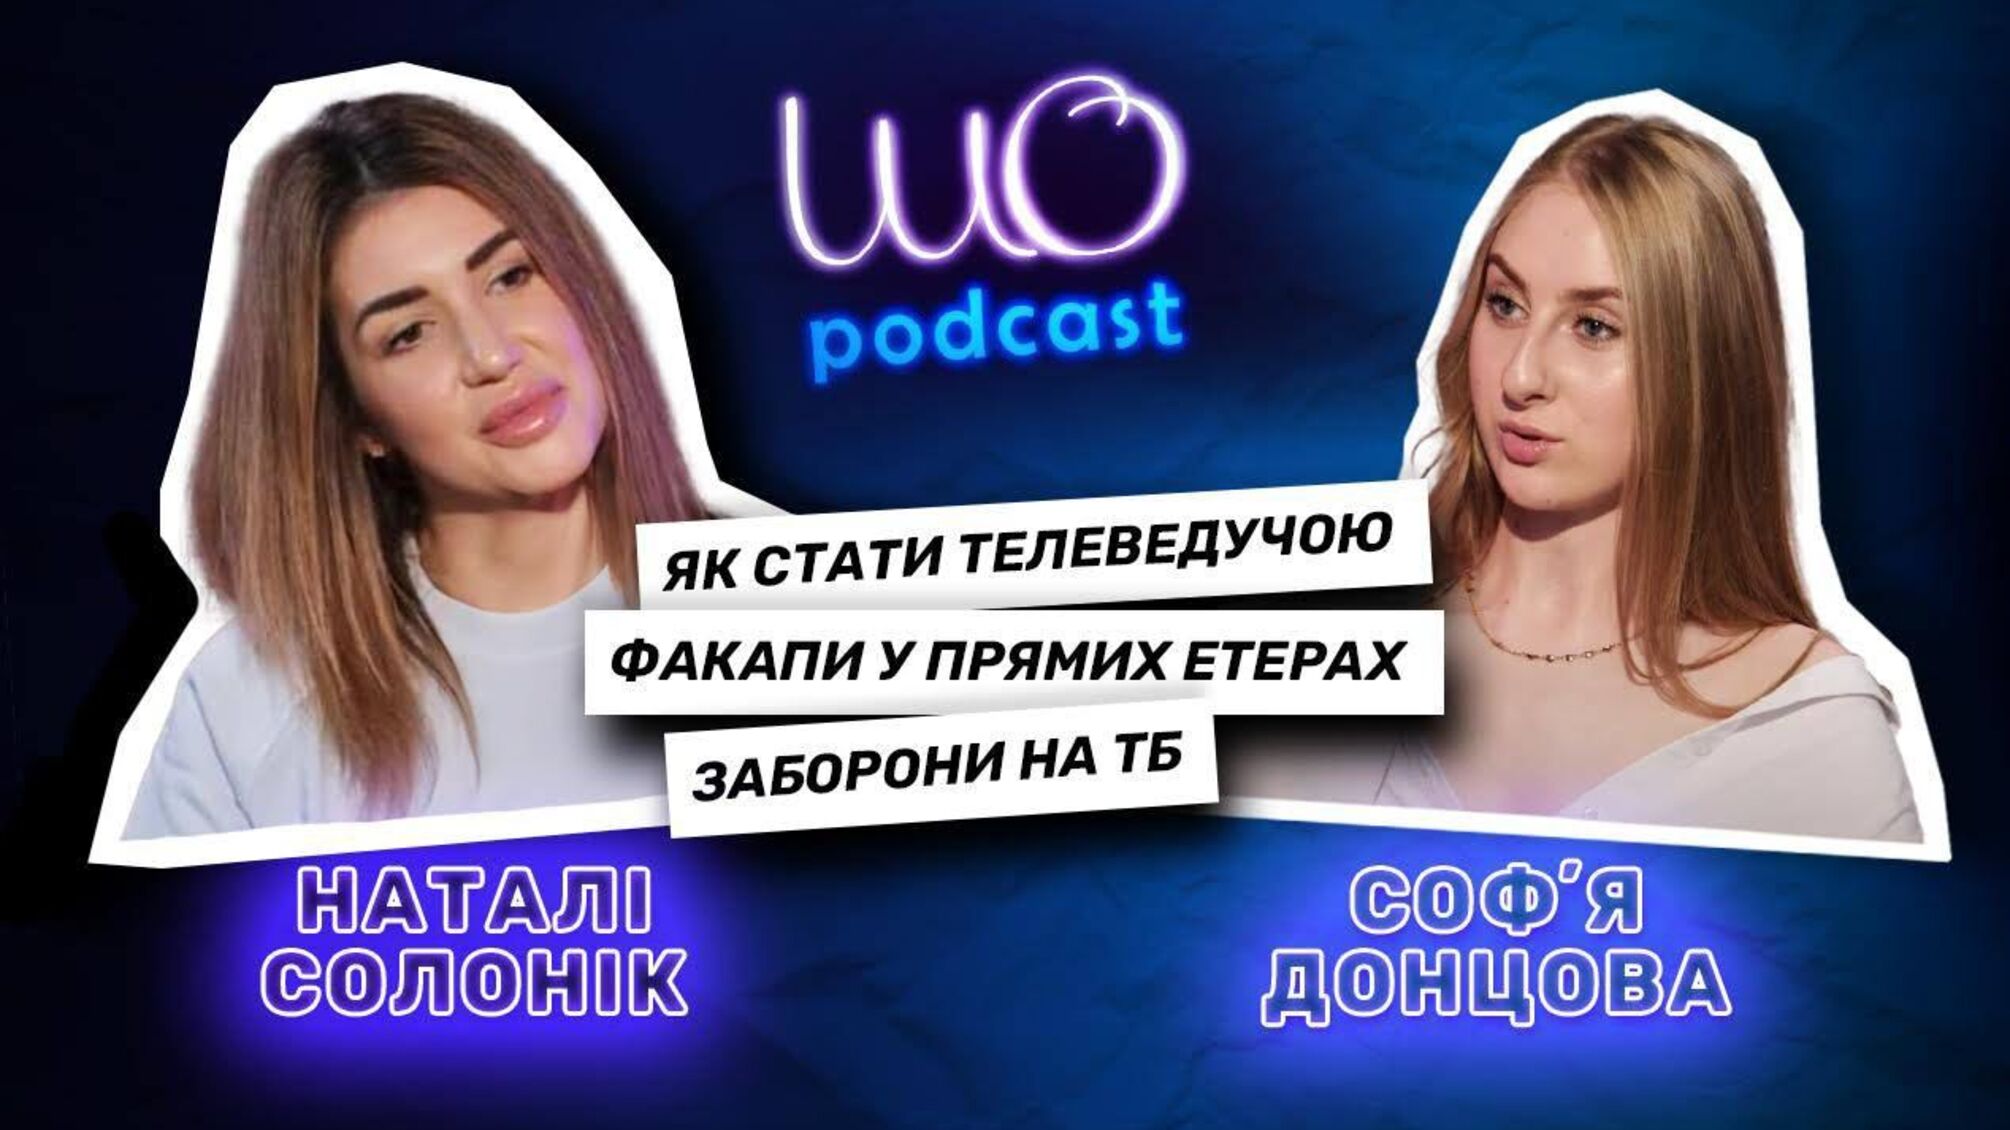 Звездные сплетники, факапы на ТВ и реакция на хейт: телеведущая Солоник – в новом выпуске ШО podcast